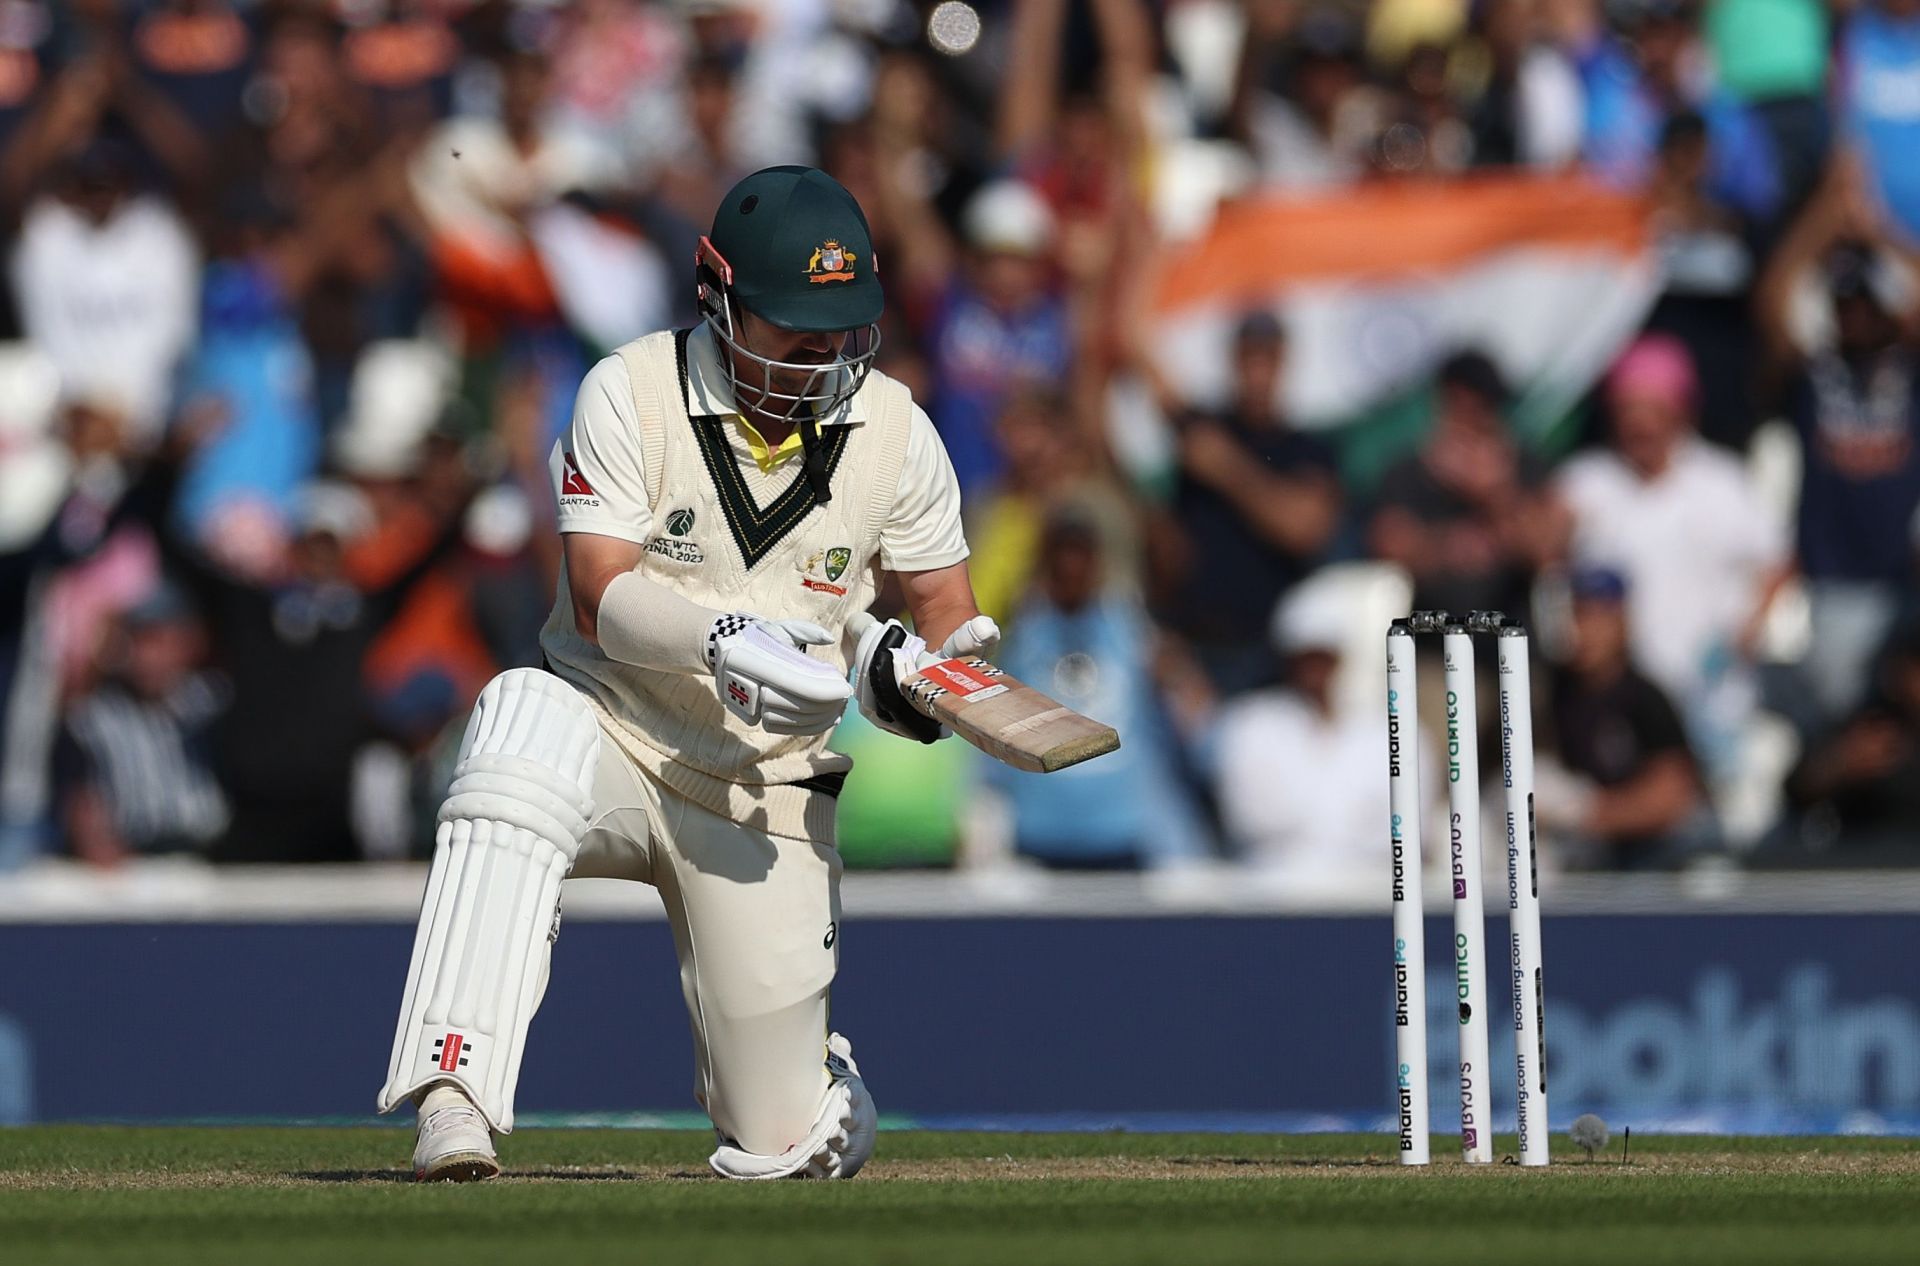 Australia v India - ICC World Test Championship Final 2023: Day Three